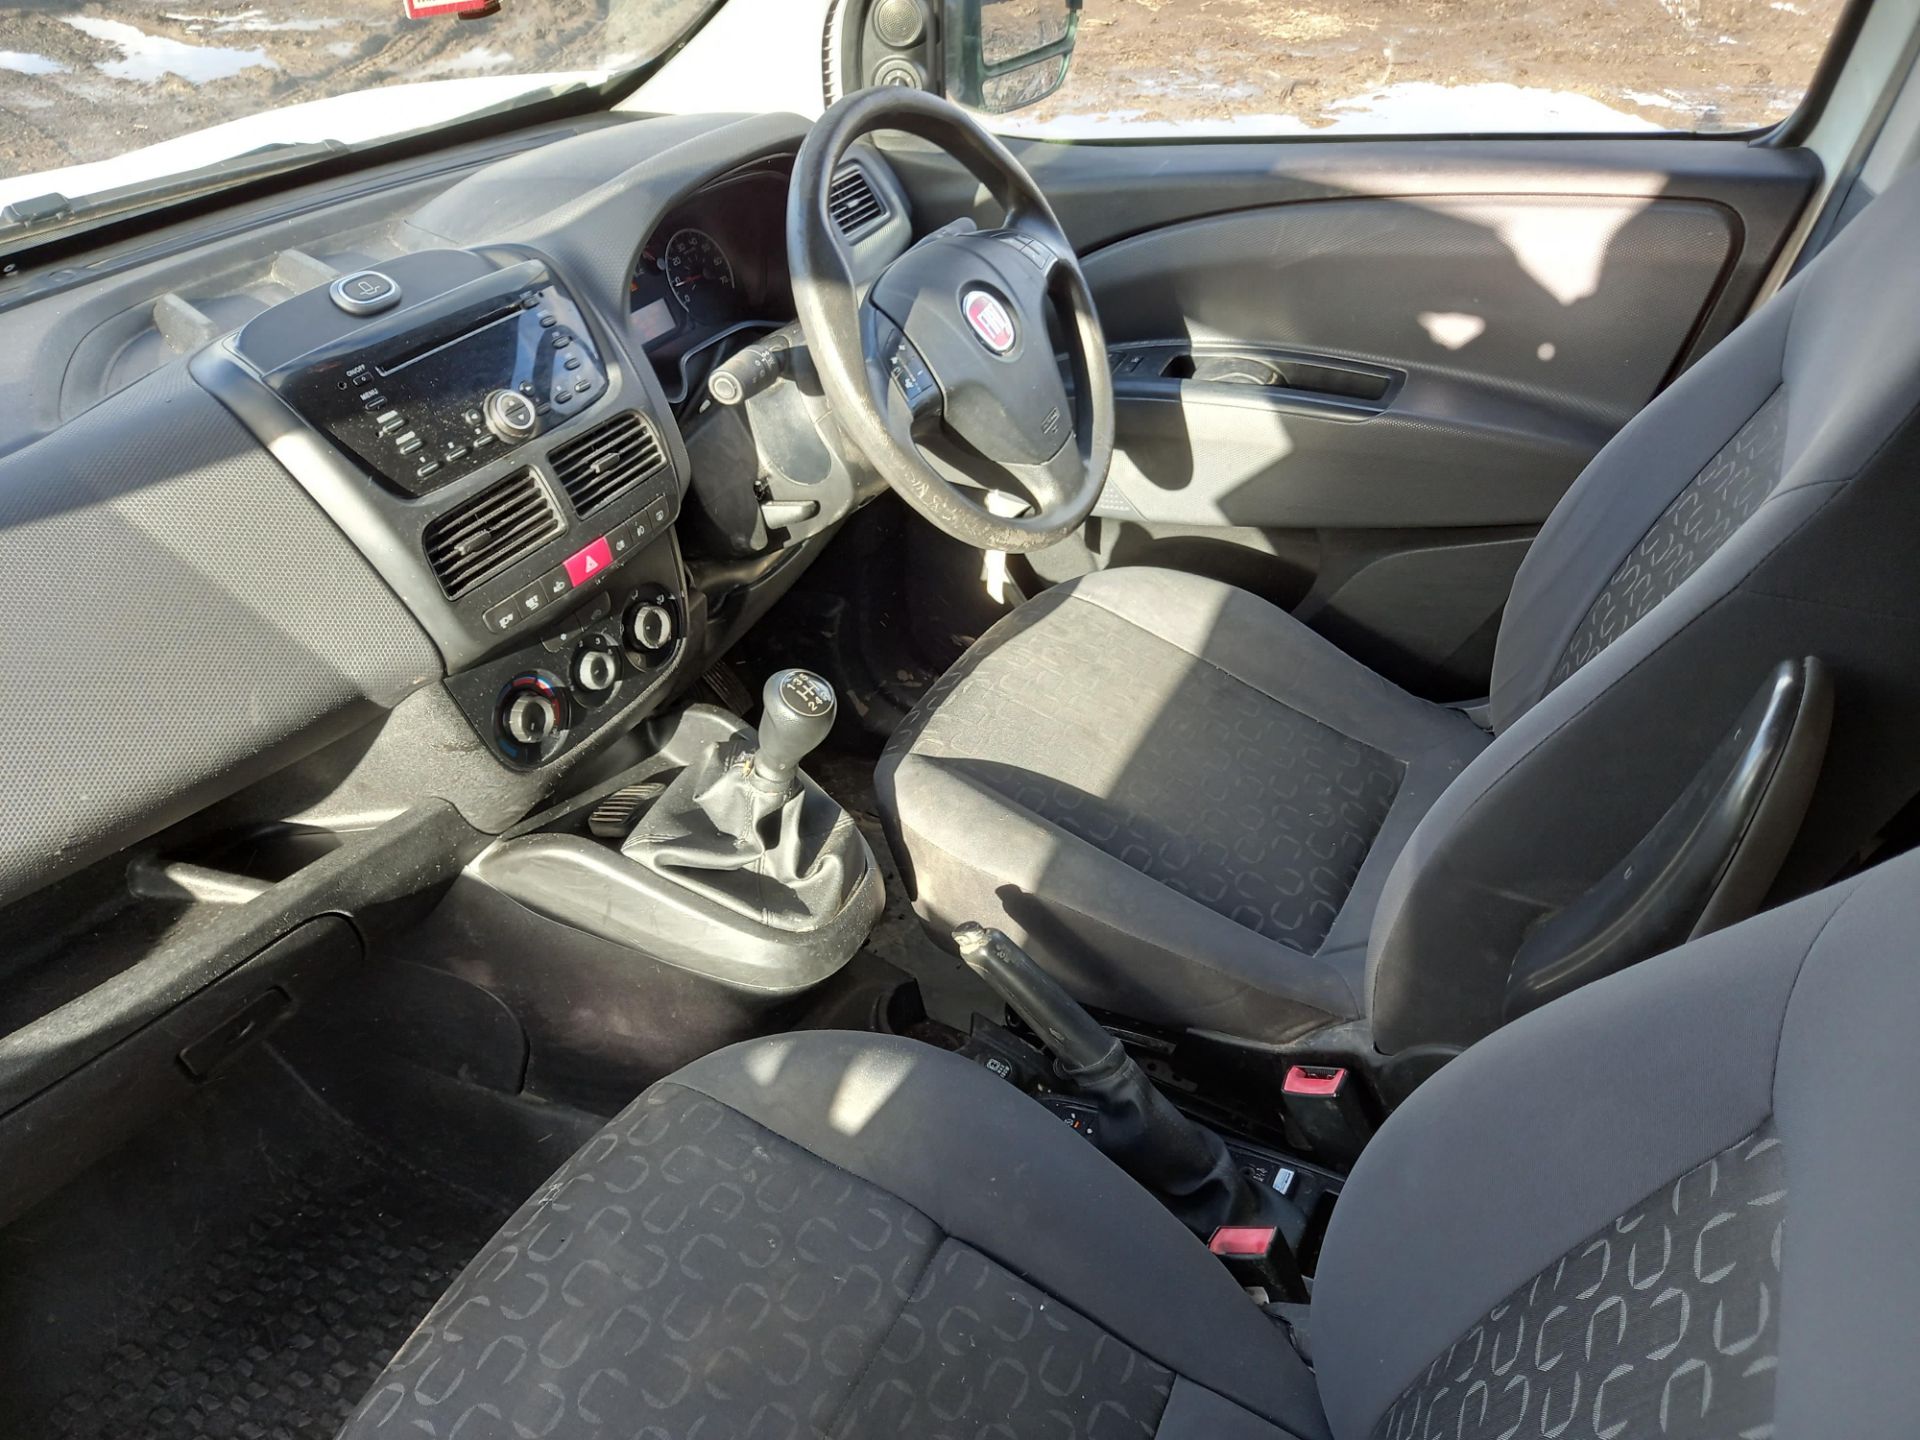 2014 Fiat Doblo MJET SX Diesel Panel Van. - Image 6 of 8